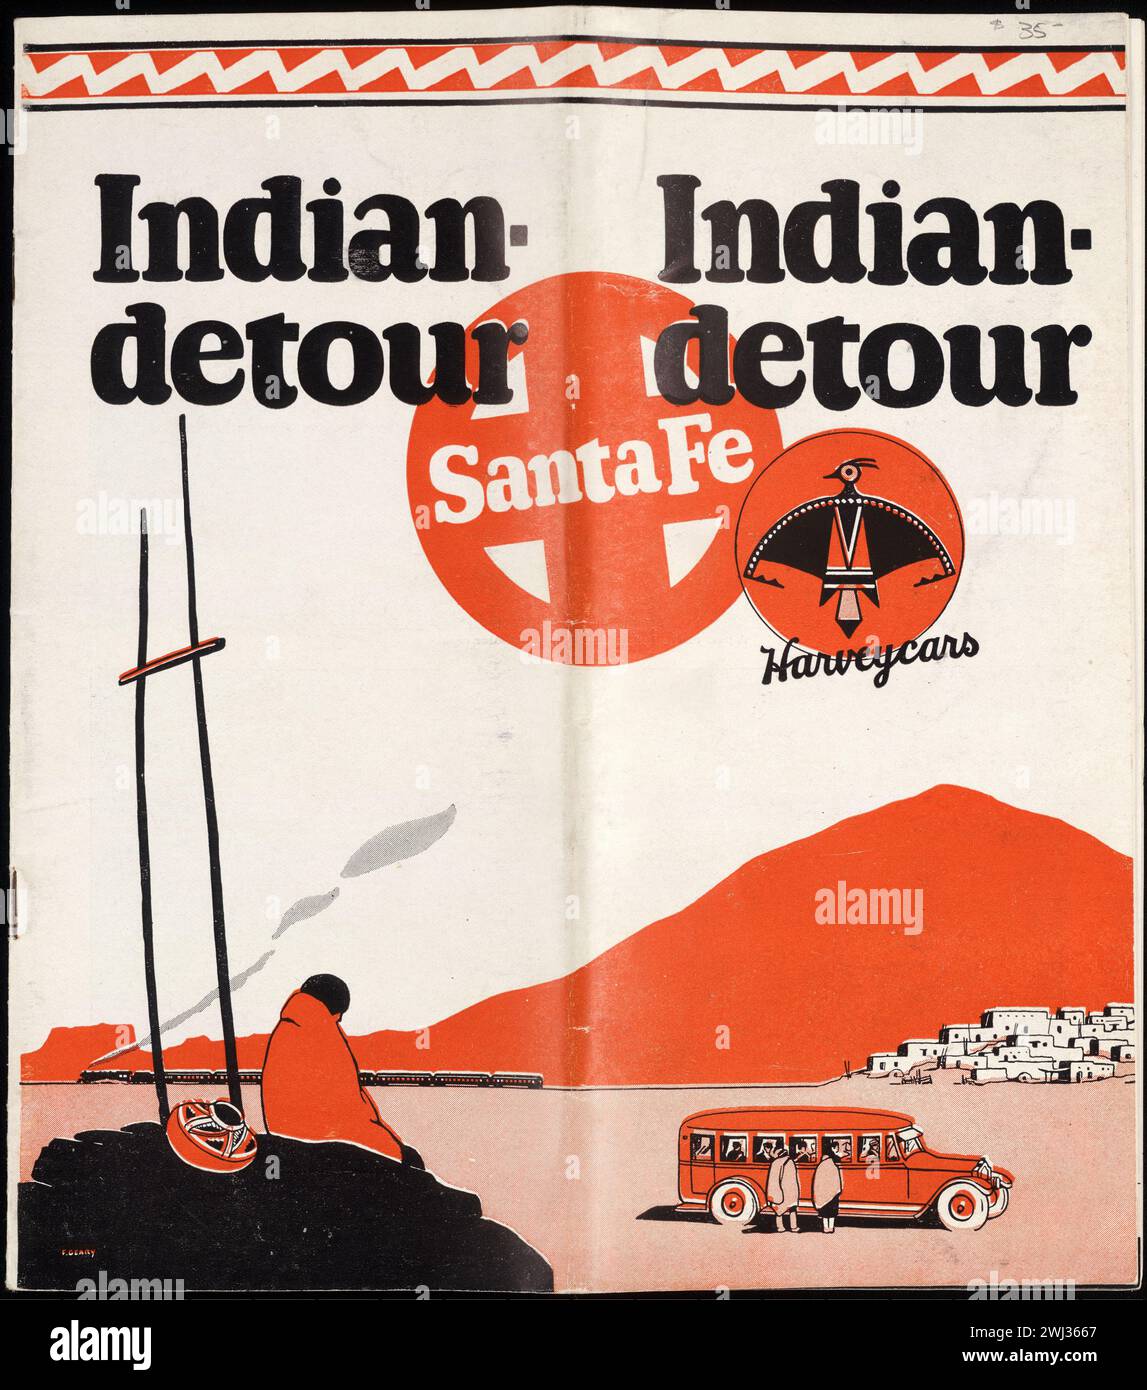 Couverture vintage pour Indian Detour, Santa Fe, Harveycars / Atchison, Topeka, et Santa Fe Railway Company. Banque D'Images